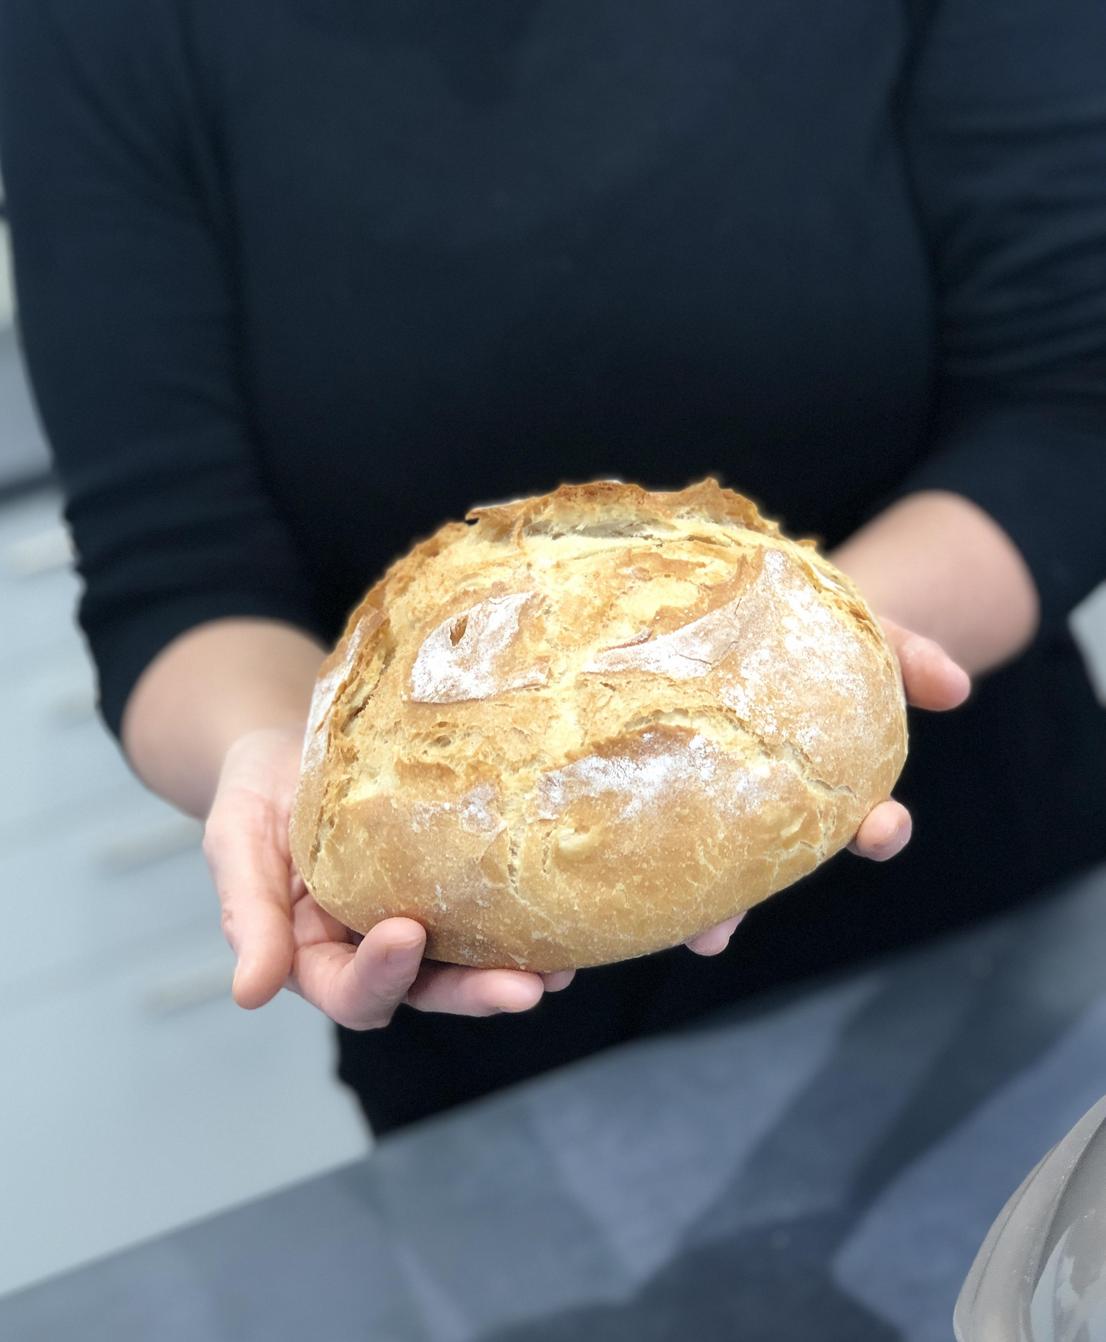 Brot wird von 2 Händen gehalten und präsentiert